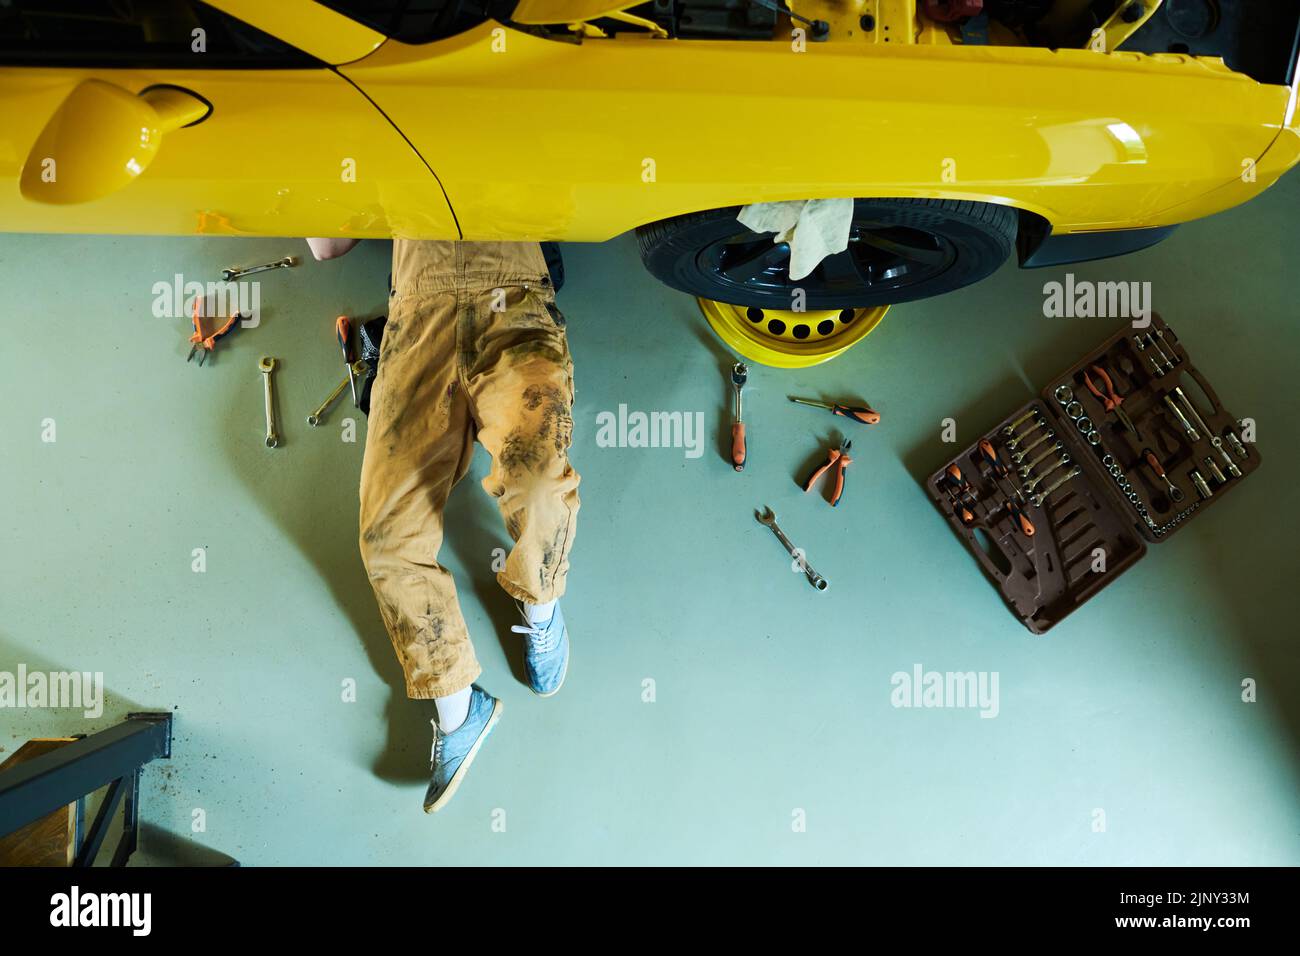 Vista superior del reparador con monos y zapatos de goma debajo del coche amarillo en el suelo del taller o garaje y los detalles de fijación con implementos Foto de stock